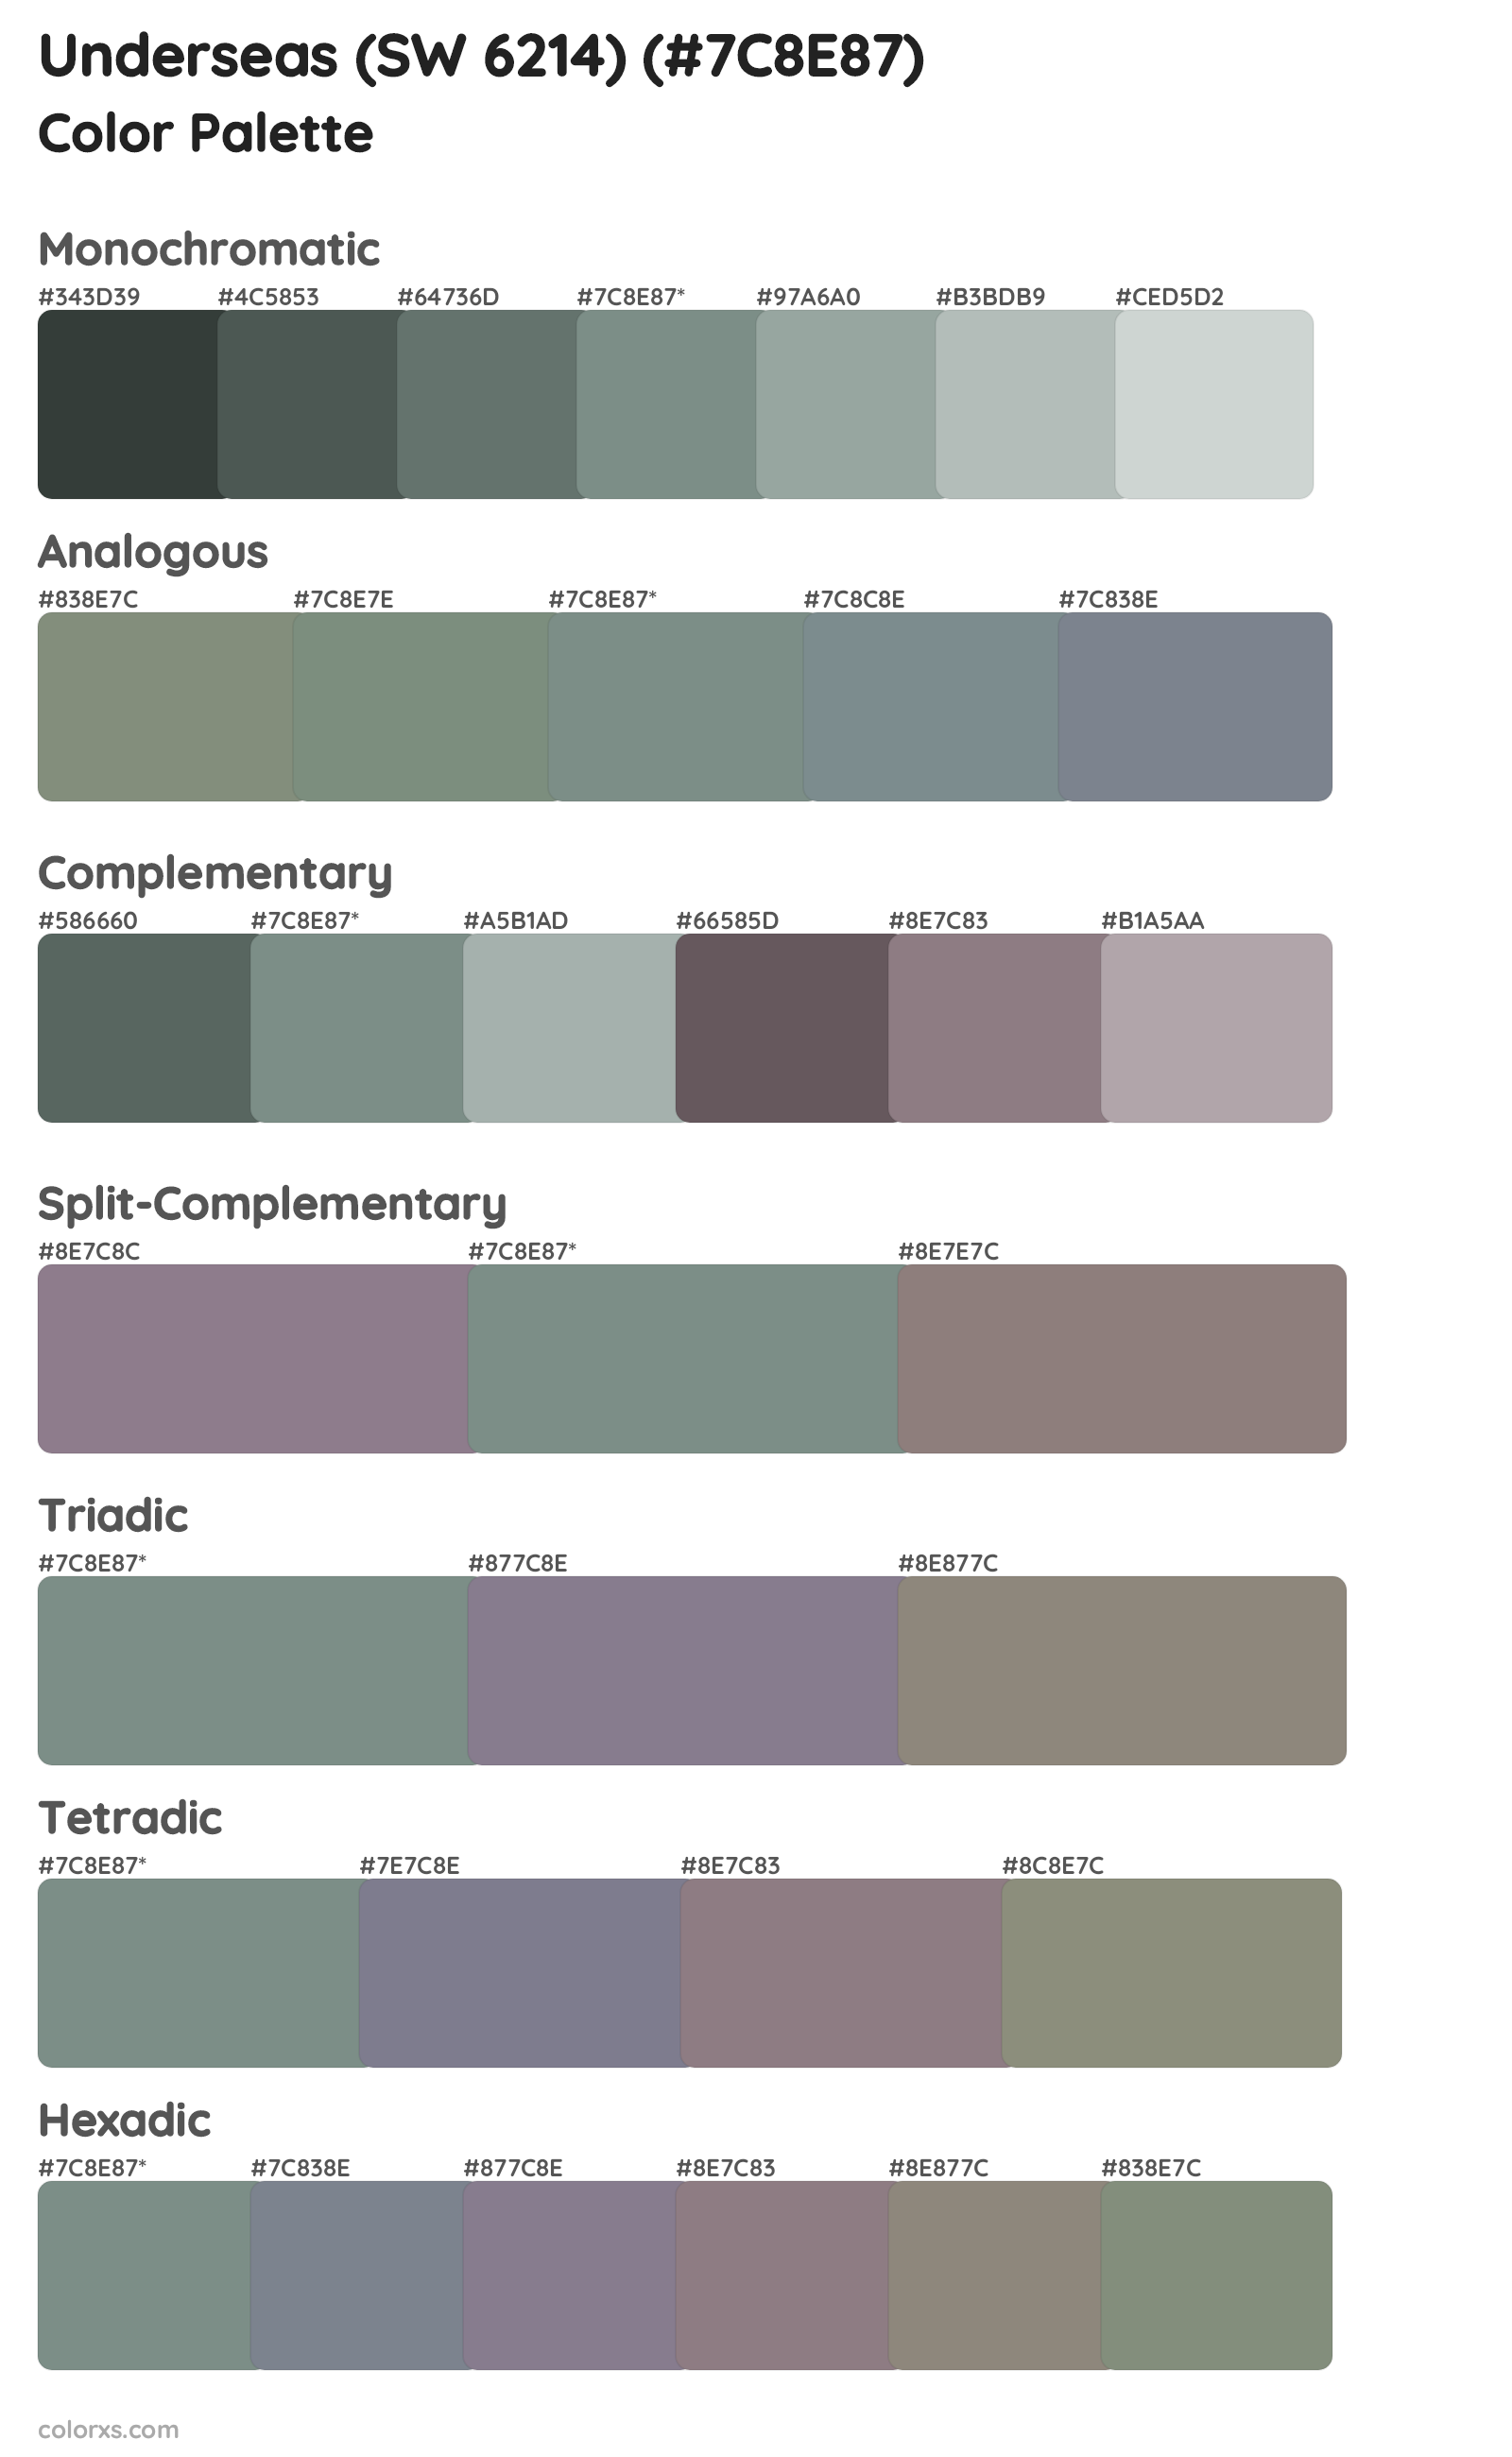 Underseas (SW 6214) Color Scheme Palettes